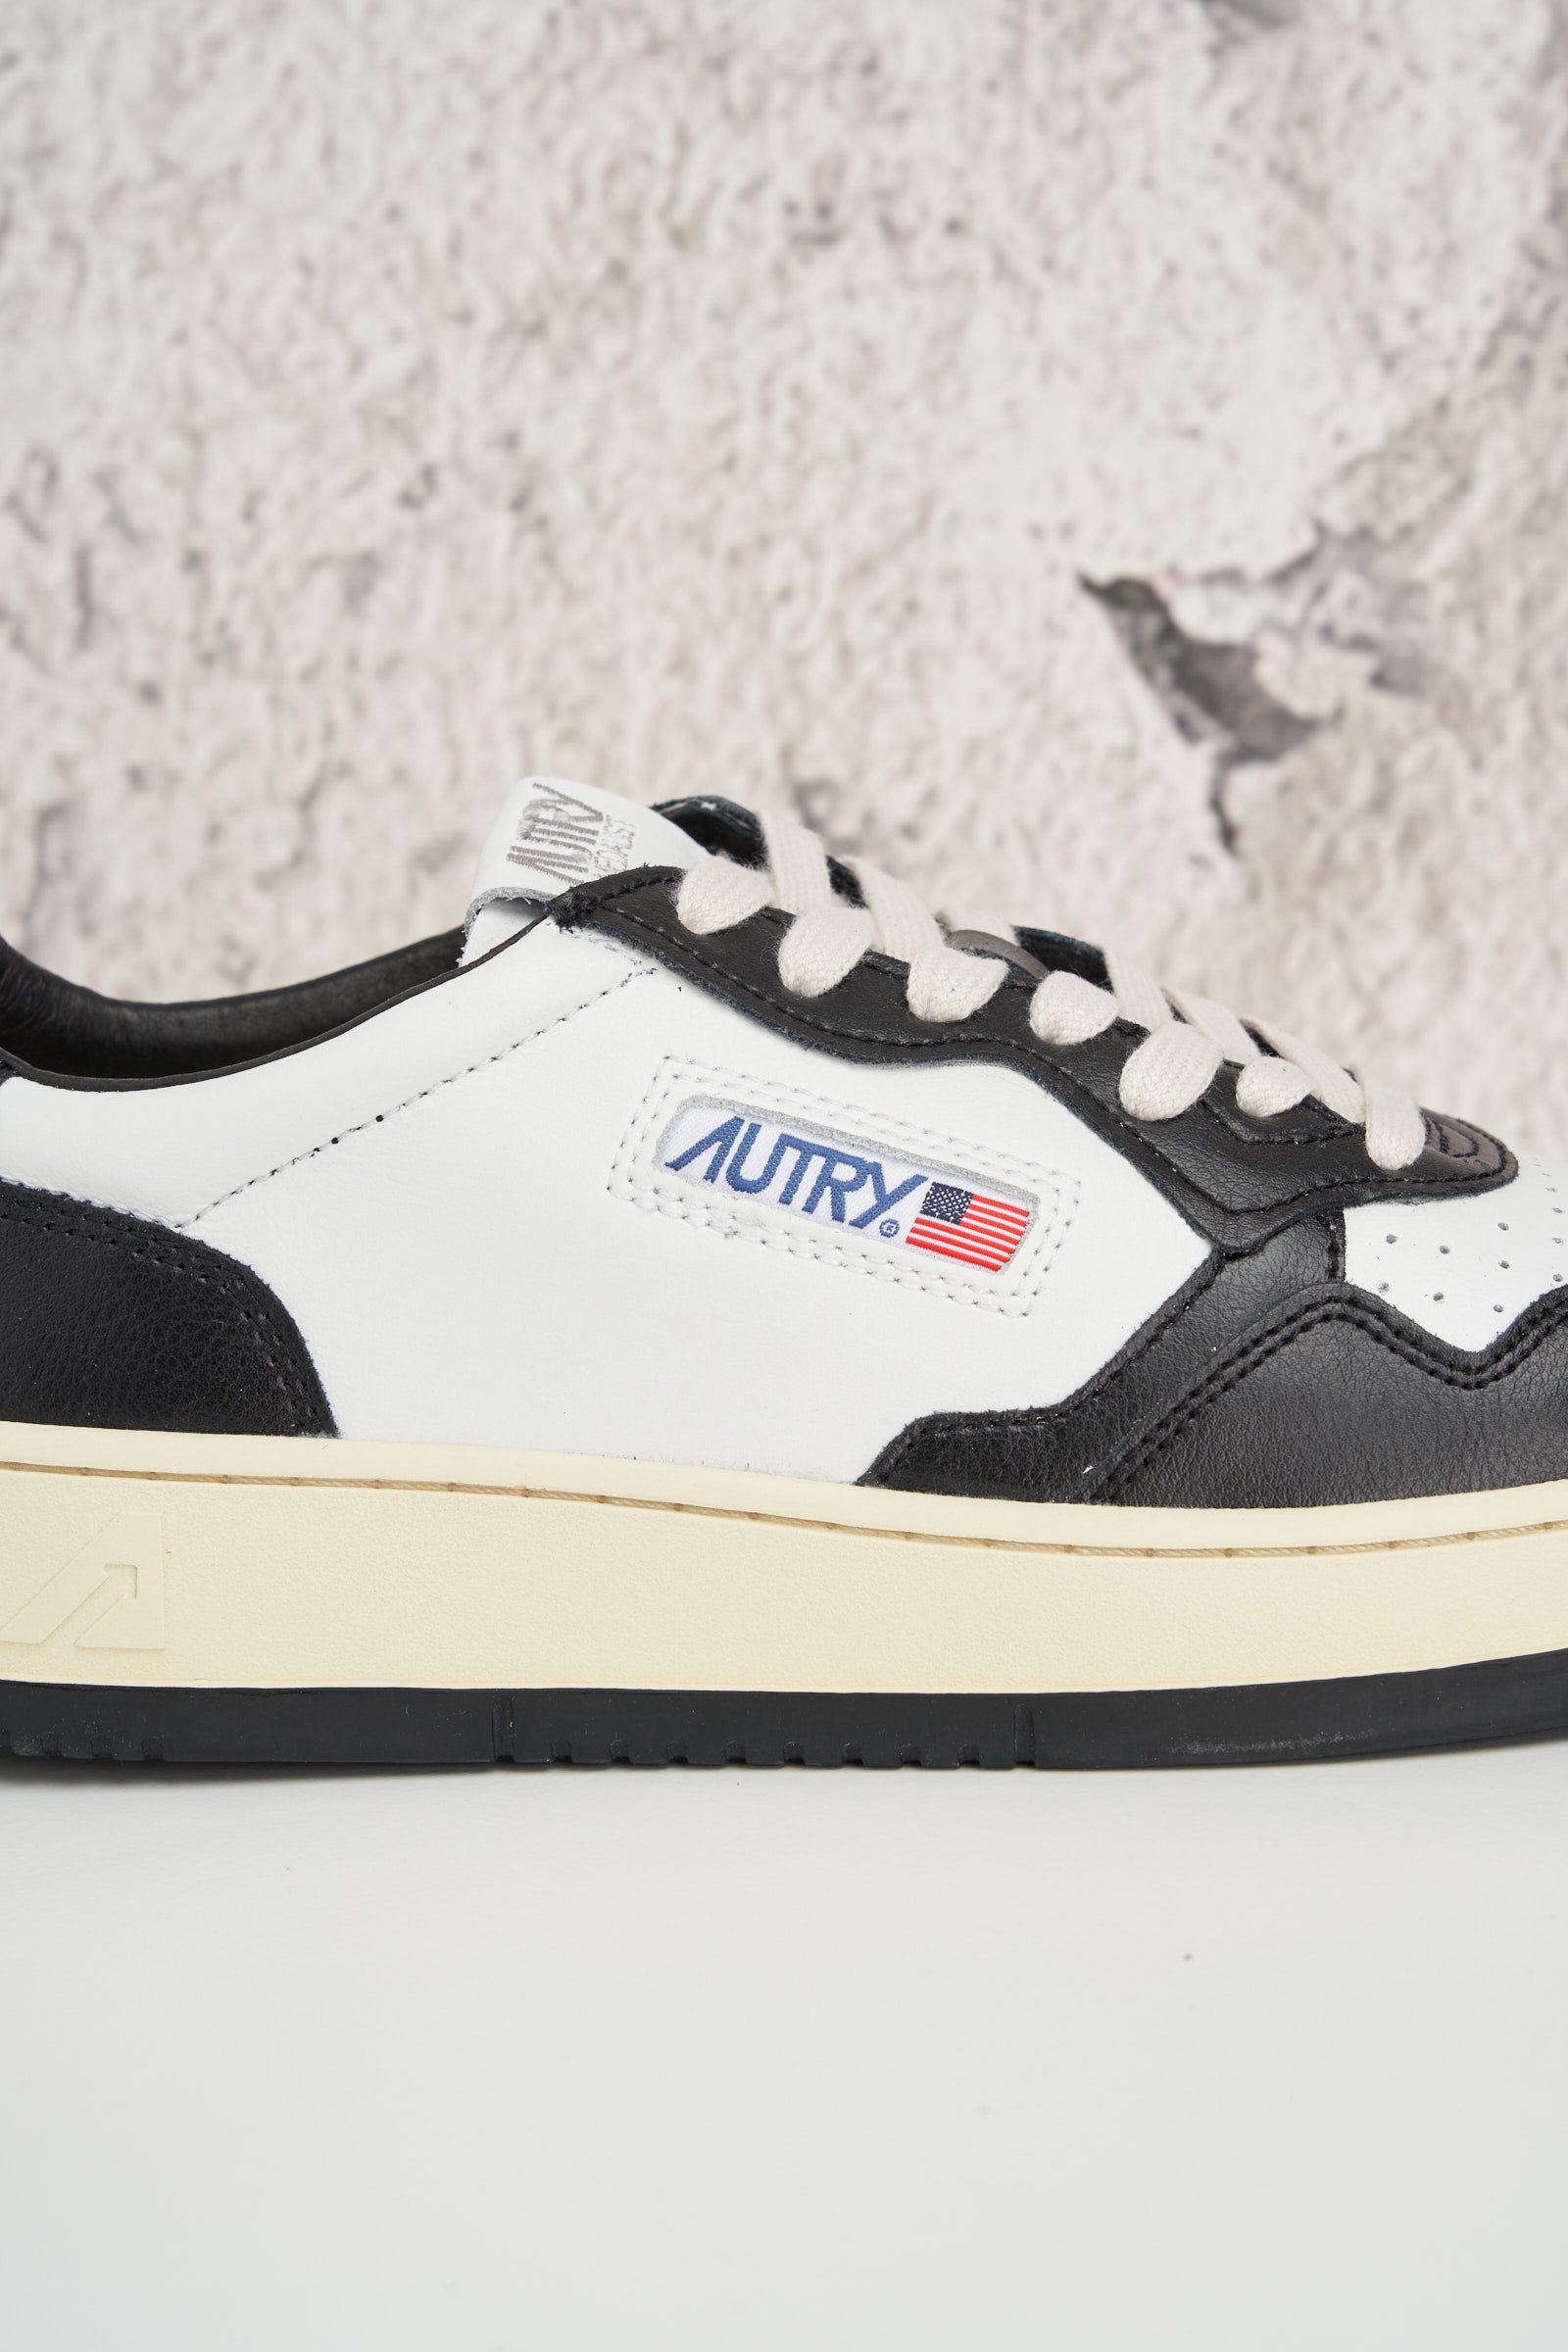  Autry Sneaker Nero E Bianco Uomo - 5